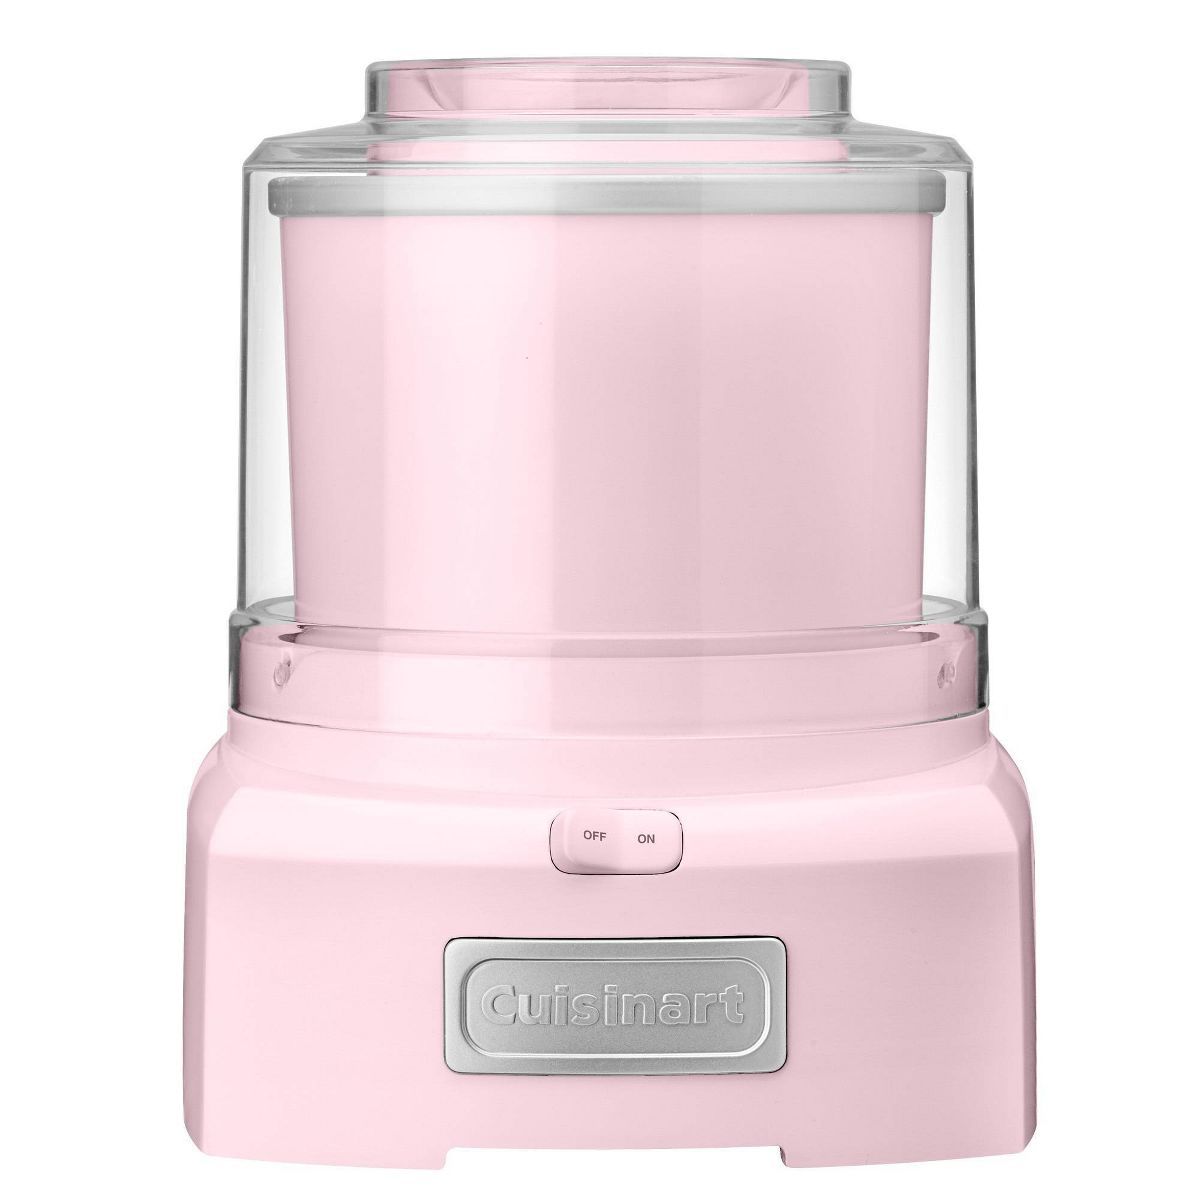 Cuisinart Automatic Frozen Yogurt, Ice Cream & Sorbet Maker - Pink - ICE-21PKP1 | Target